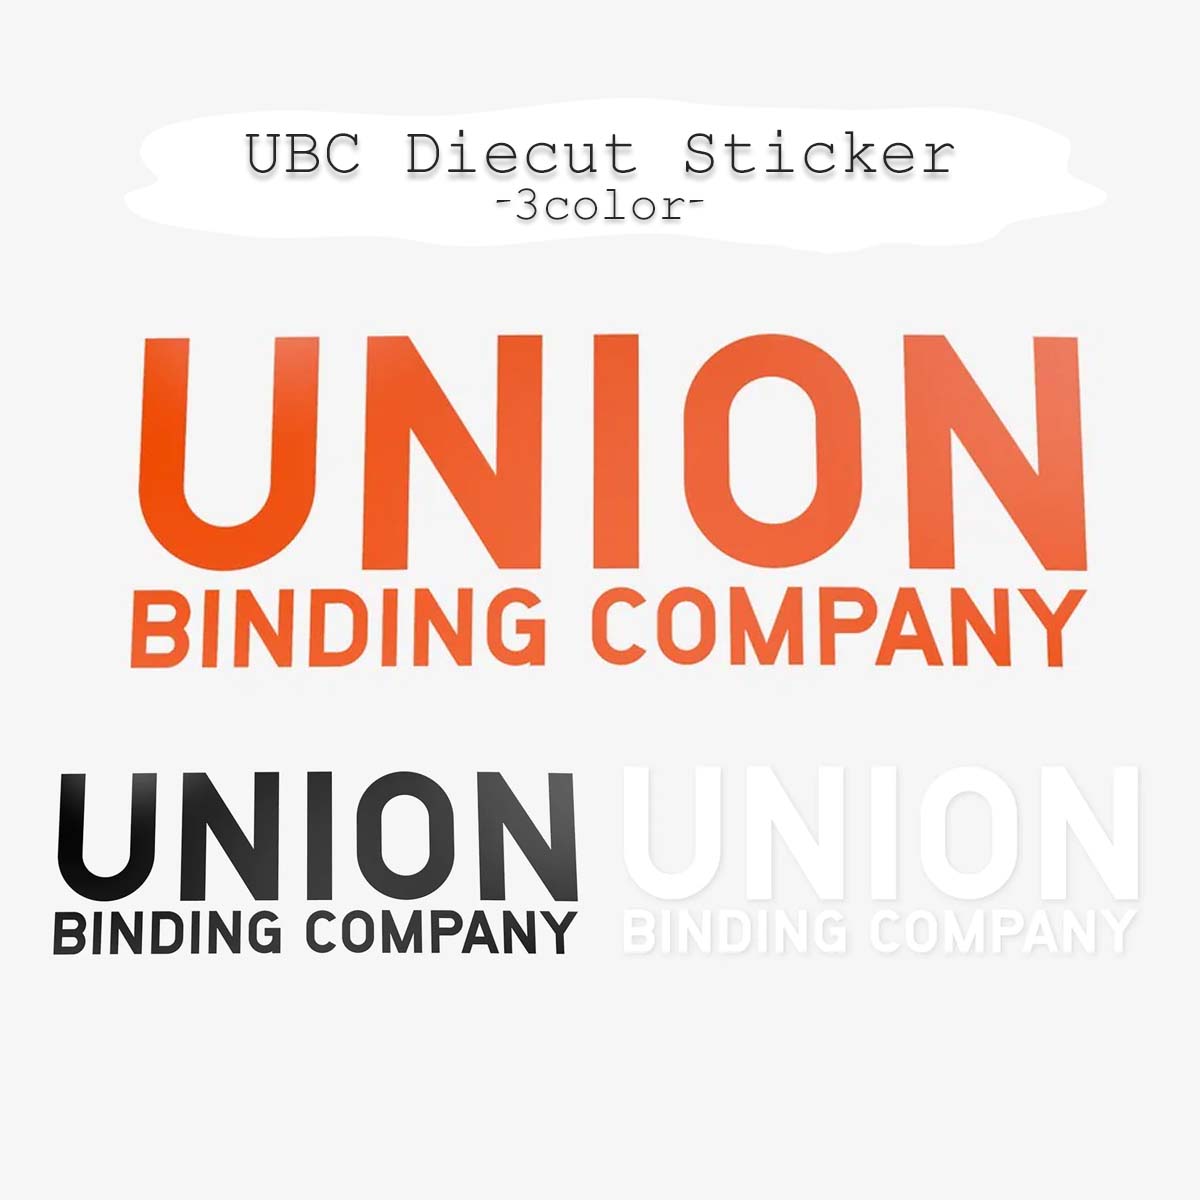 UNION ユニオン ステッカー UBC Diecut Sticker シール カッティングステッカー ダイカット スノーボード スノボ ビンディング バインディング ロゴ サーフボード アウトドア スキー 車 屋外 ユニセックス 日本正規品